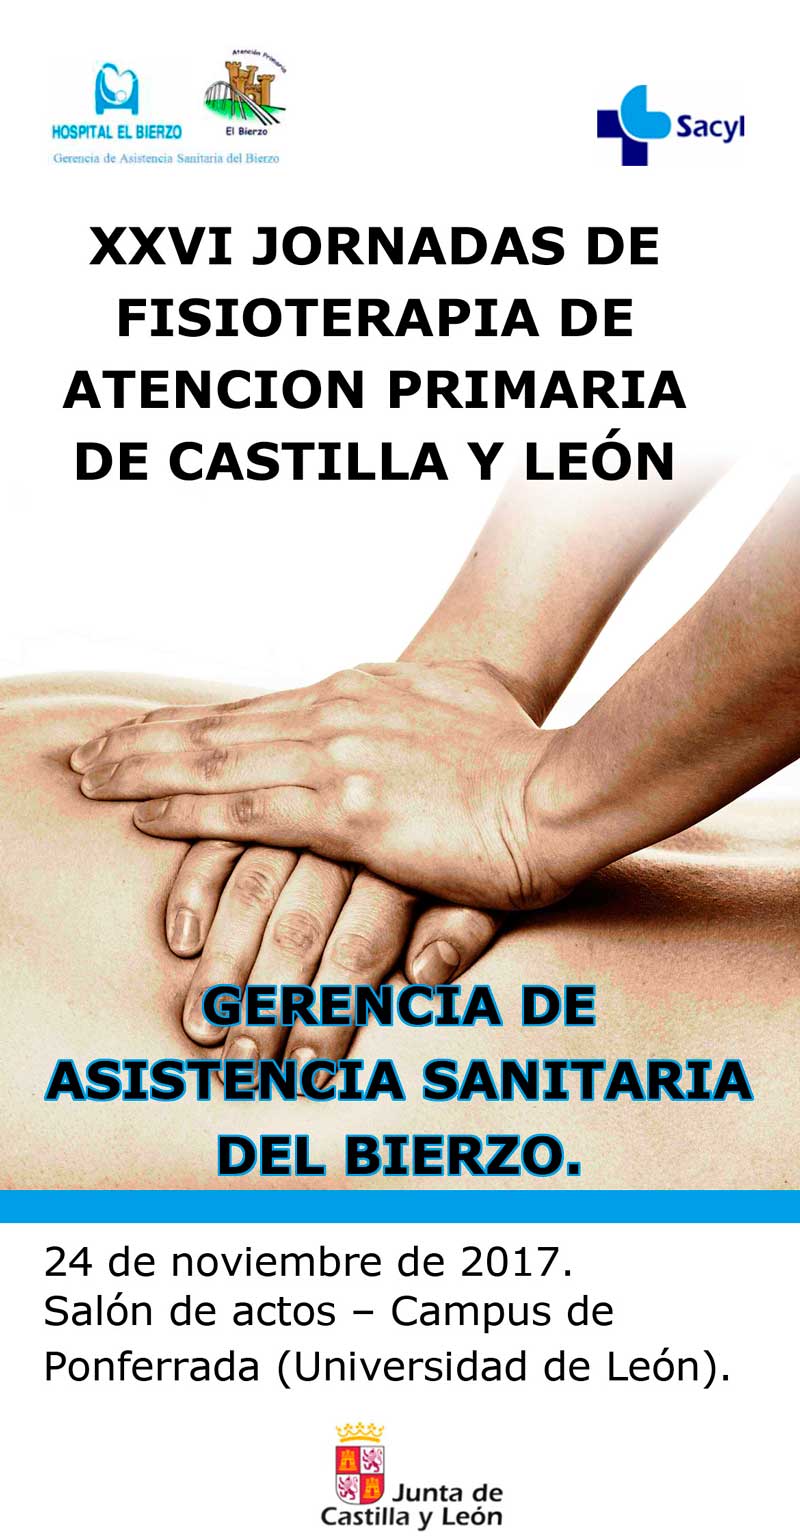 XXVI Jornadas de Fisioterapia de Atención Primaria de Castilla y León